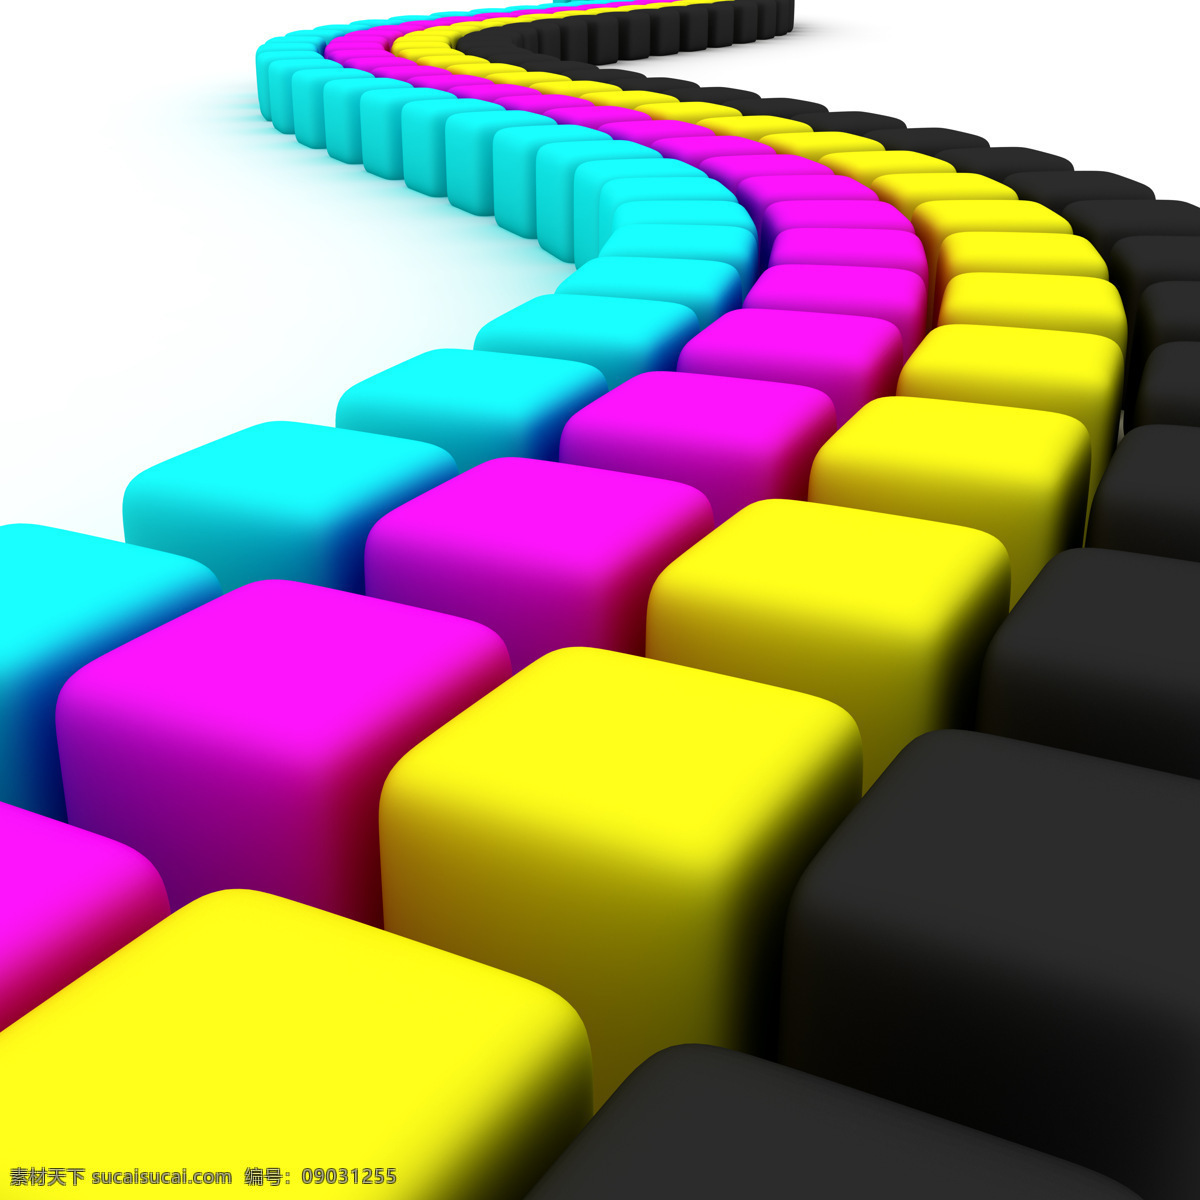 彩色 方块 组成 弯曲 道路 彩色方块 立体方块 颜料 蓝色 紫色 黄色 黑色 其他类别 生活百科